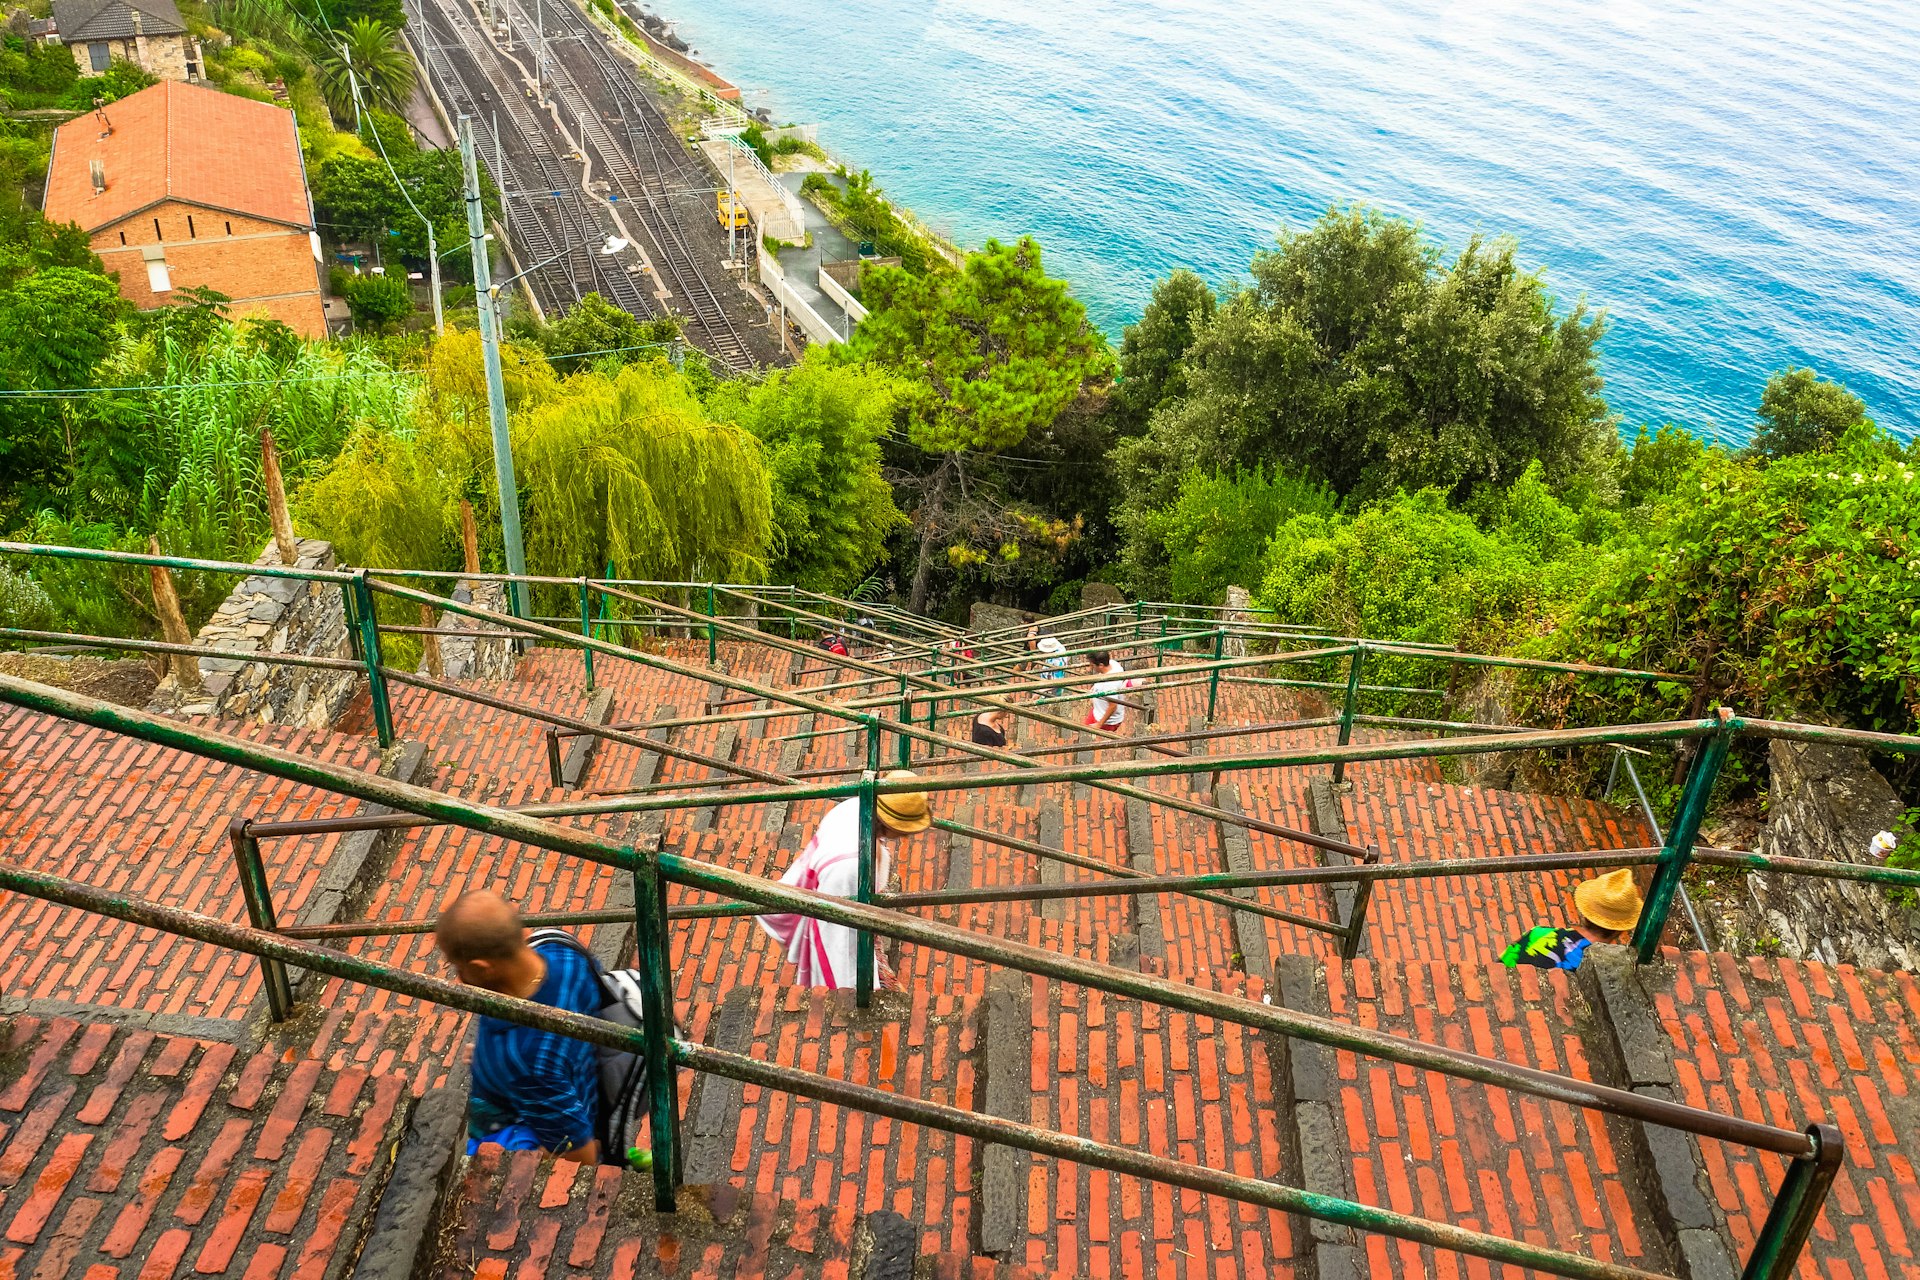 A Lardarina, longo lance de escadas de tijolos, lances com degraus da estação até a vila de Corniglia, uma das cinco terras da incrível Cinque Terre, Itália